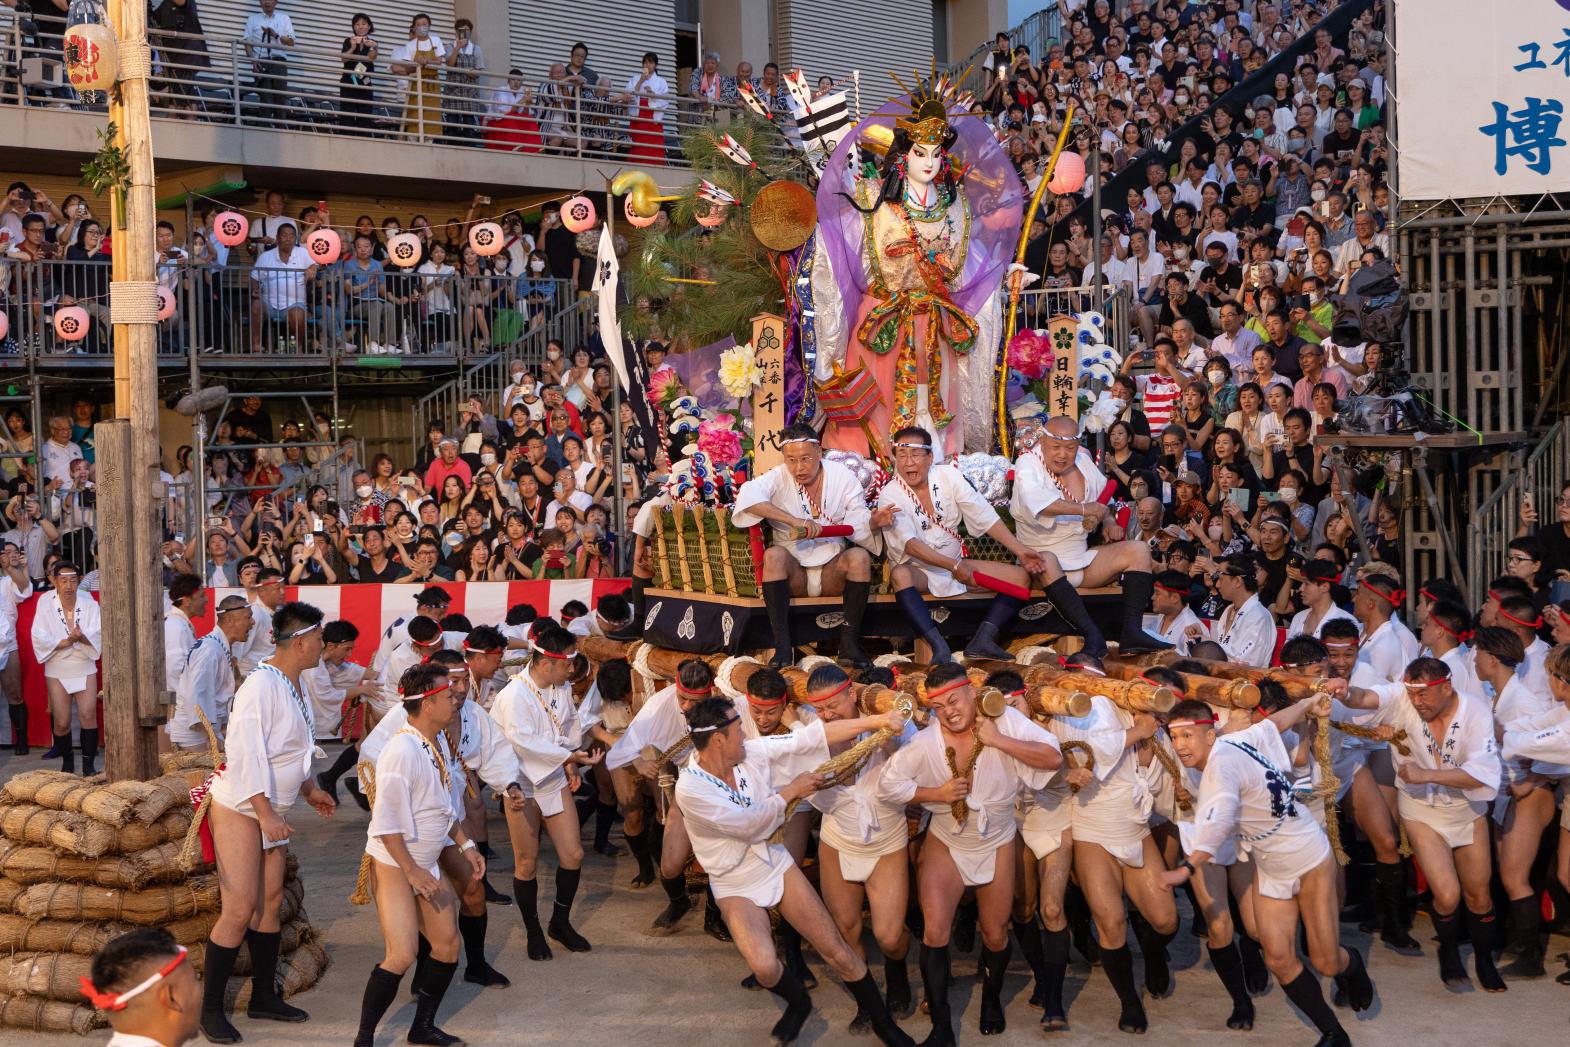 festival held in July in Fukuoka City